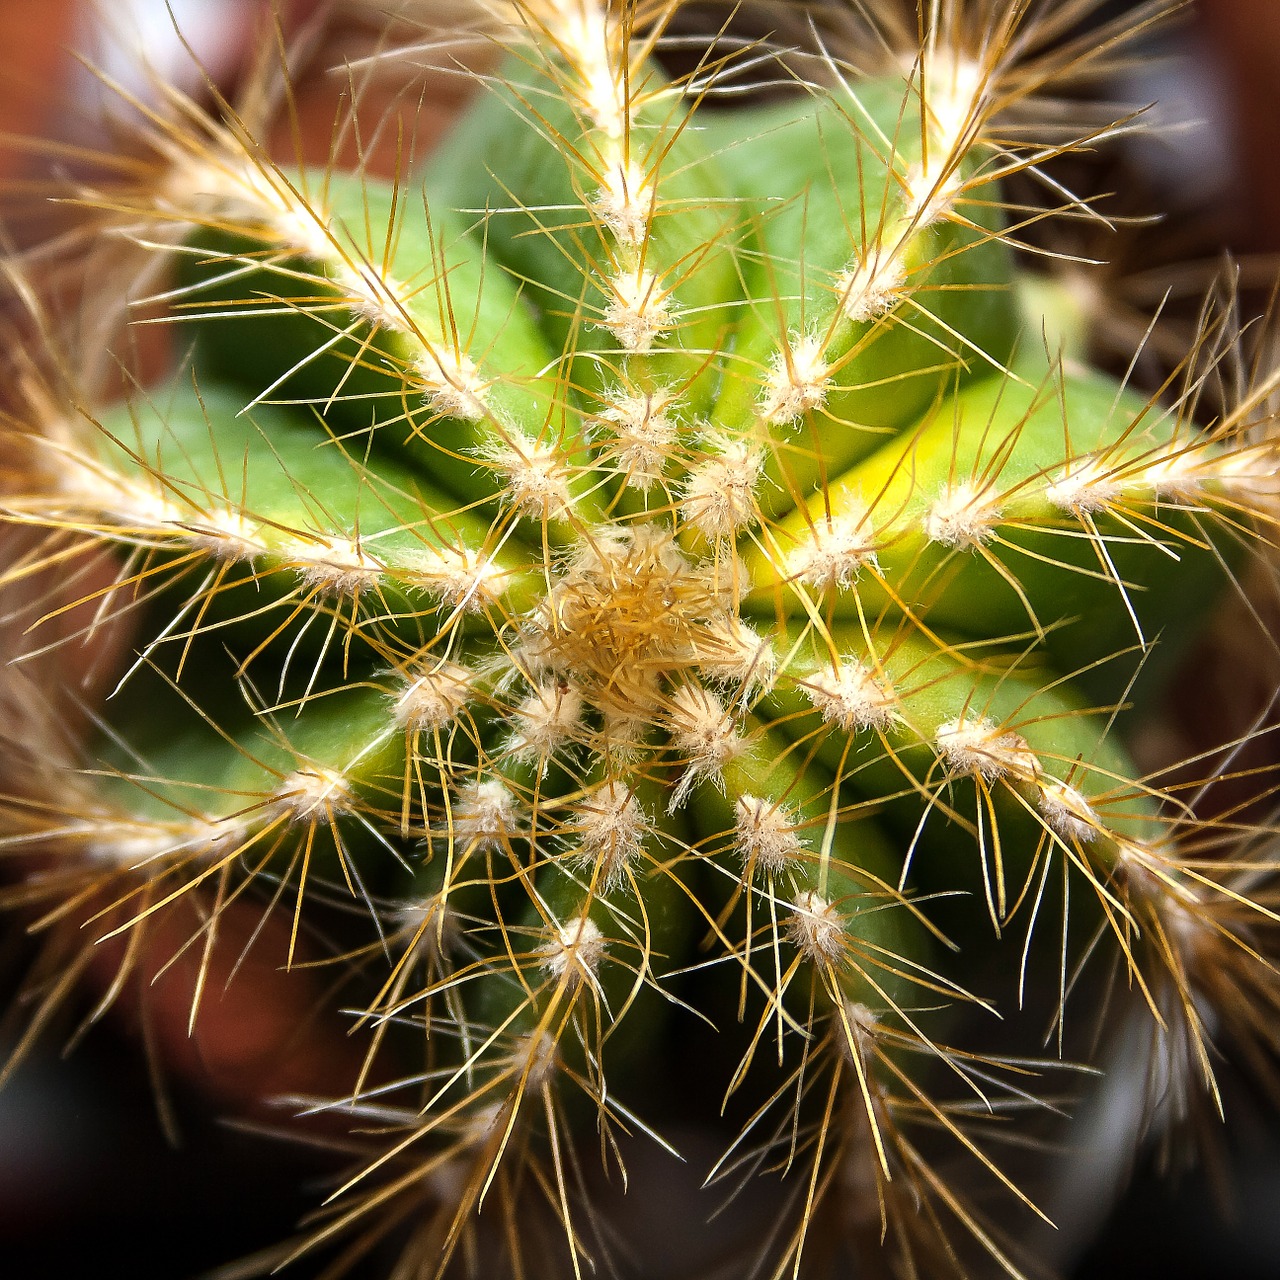 cactus crown cactus plant free photo